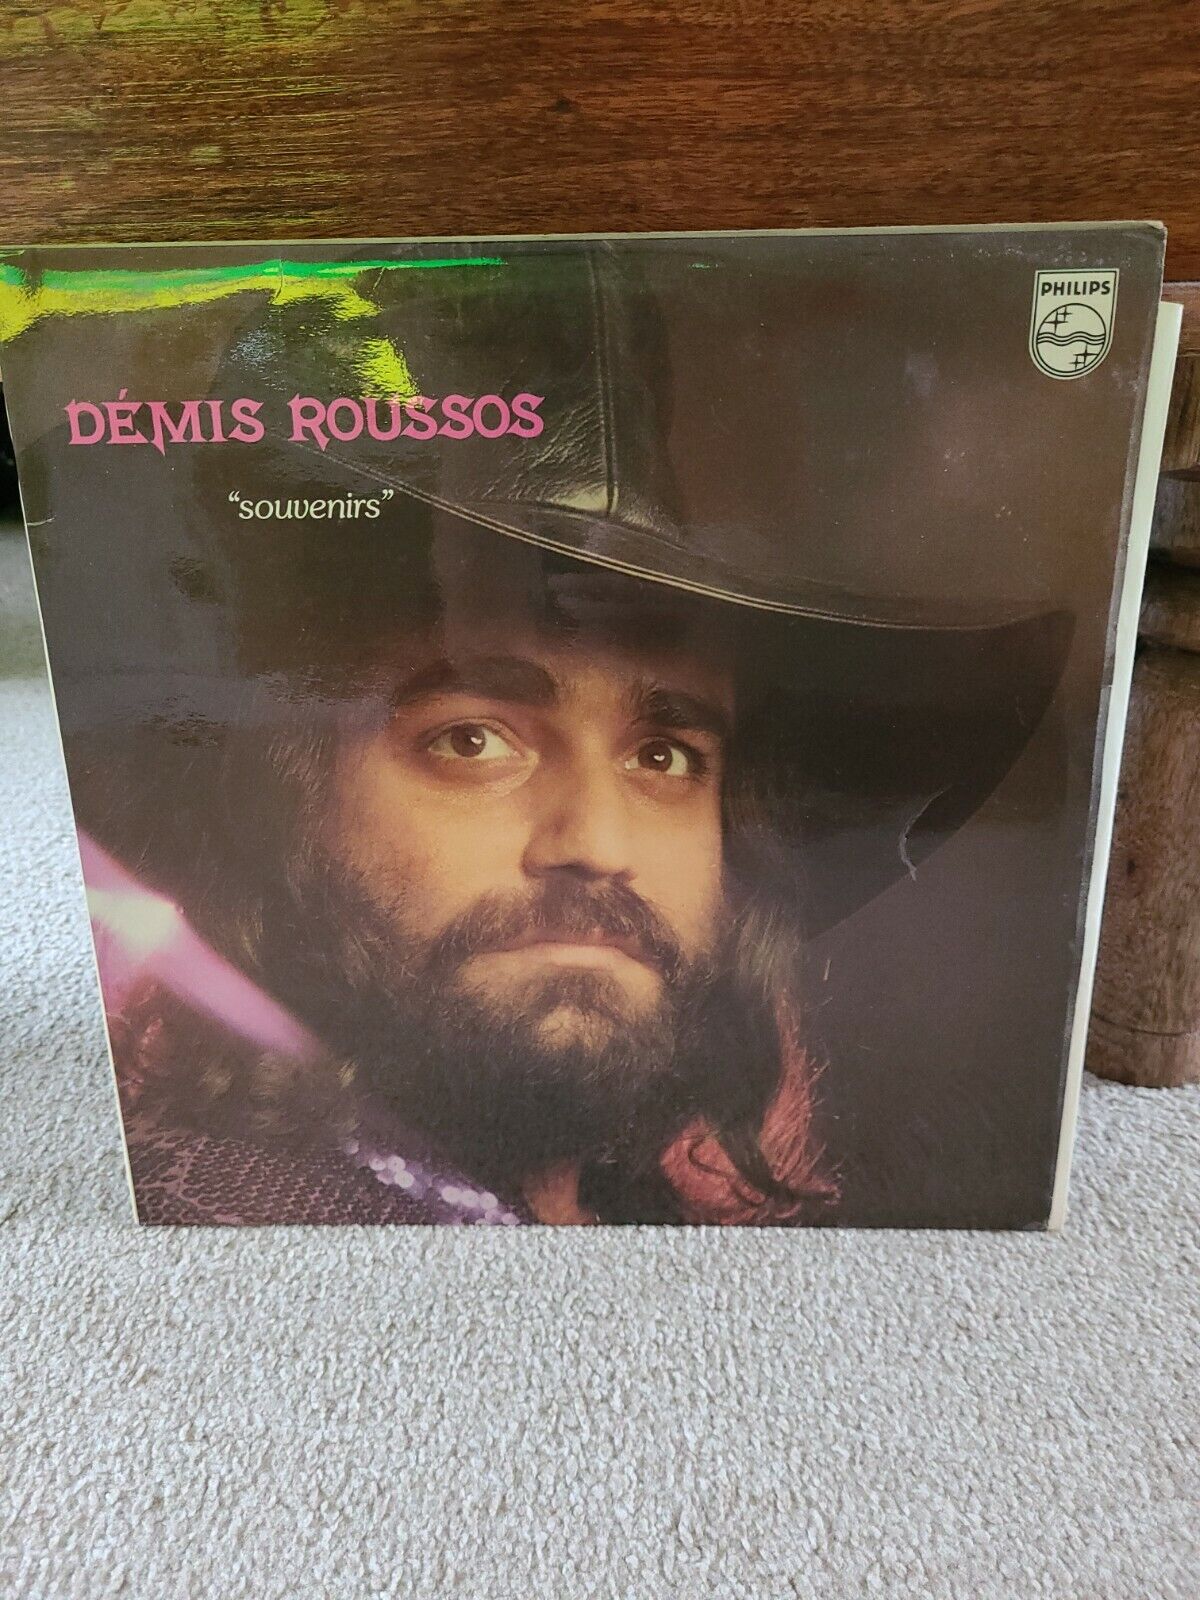 DEMIS ROUSSOS Souvenirs Vinyl L.P **1975 UK** PHILIPS 6325 201